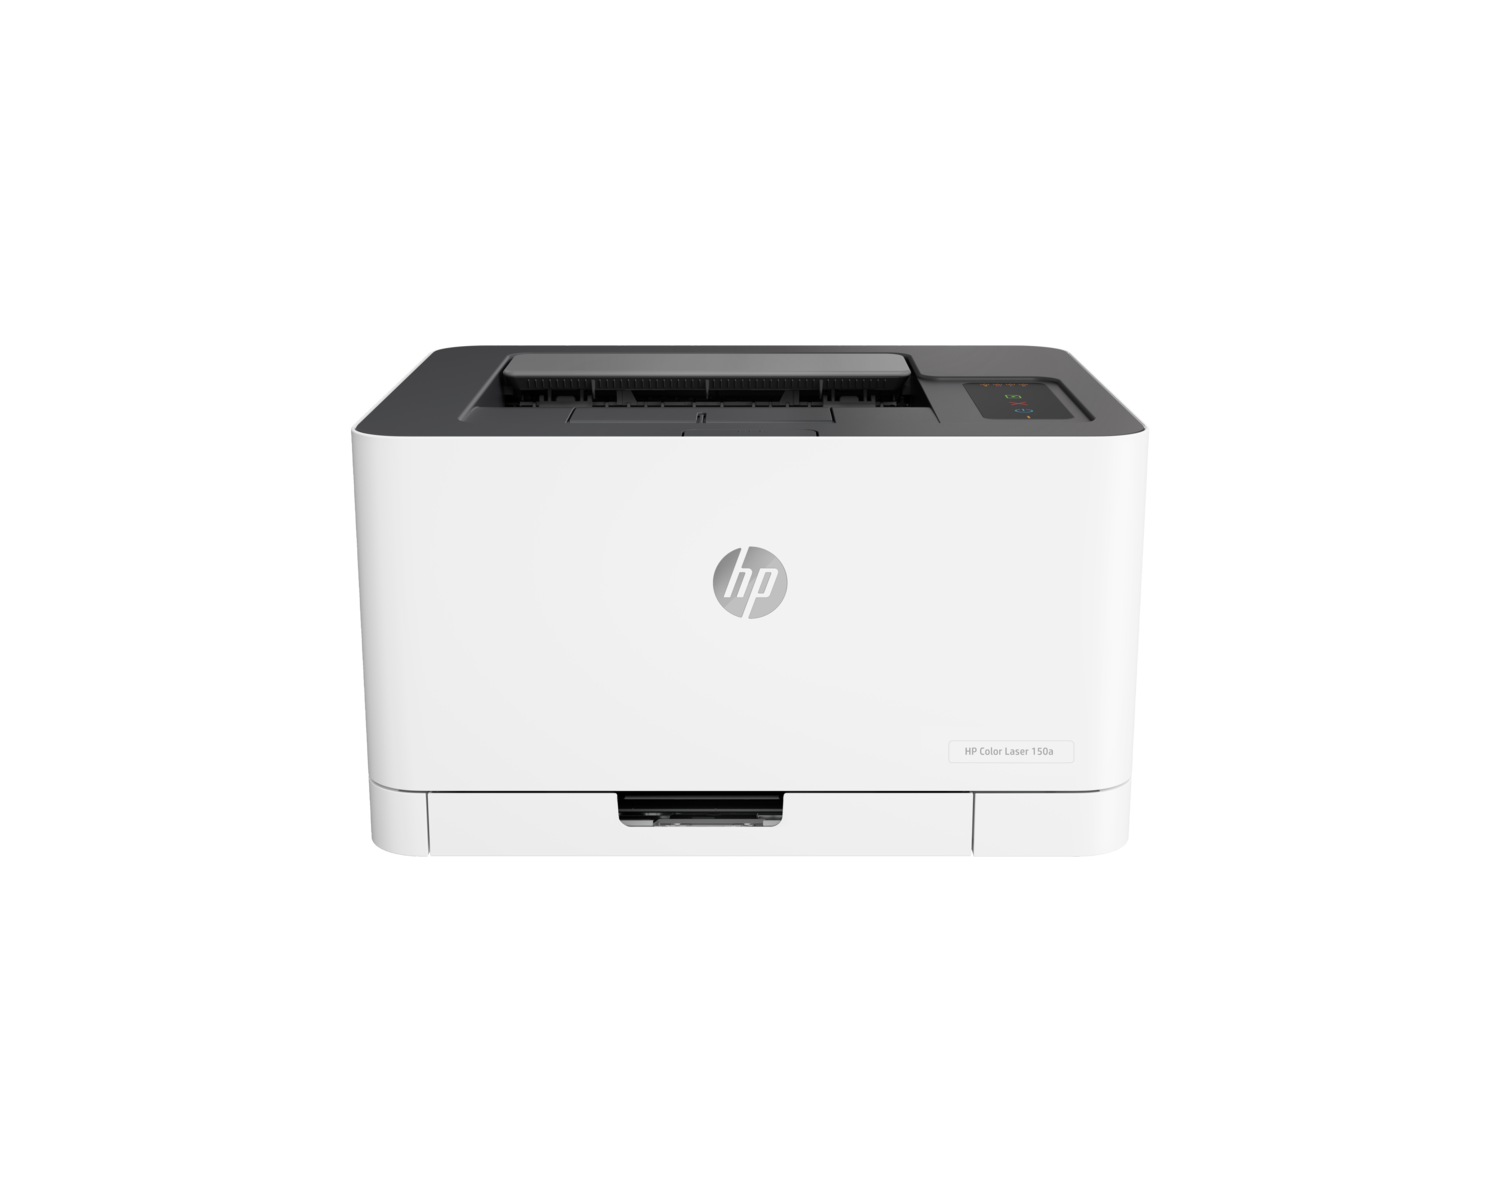 Принтер лазерный HP Color Laser 150a цветн A4